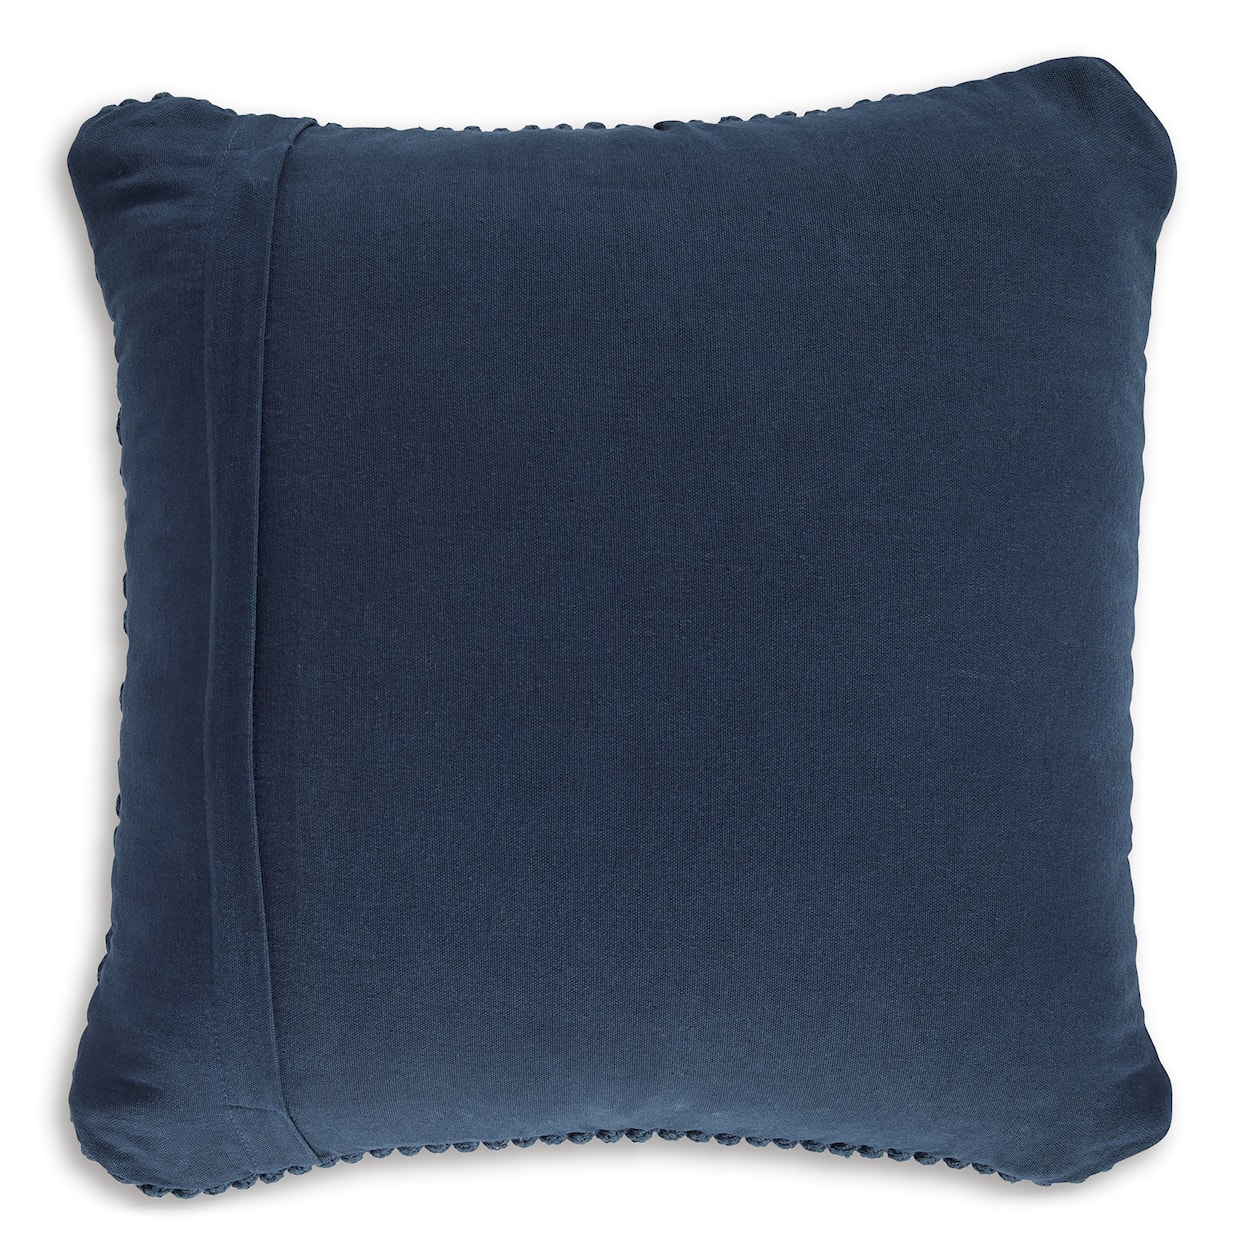 Signature Design Renemore Renemore Blue Pillow